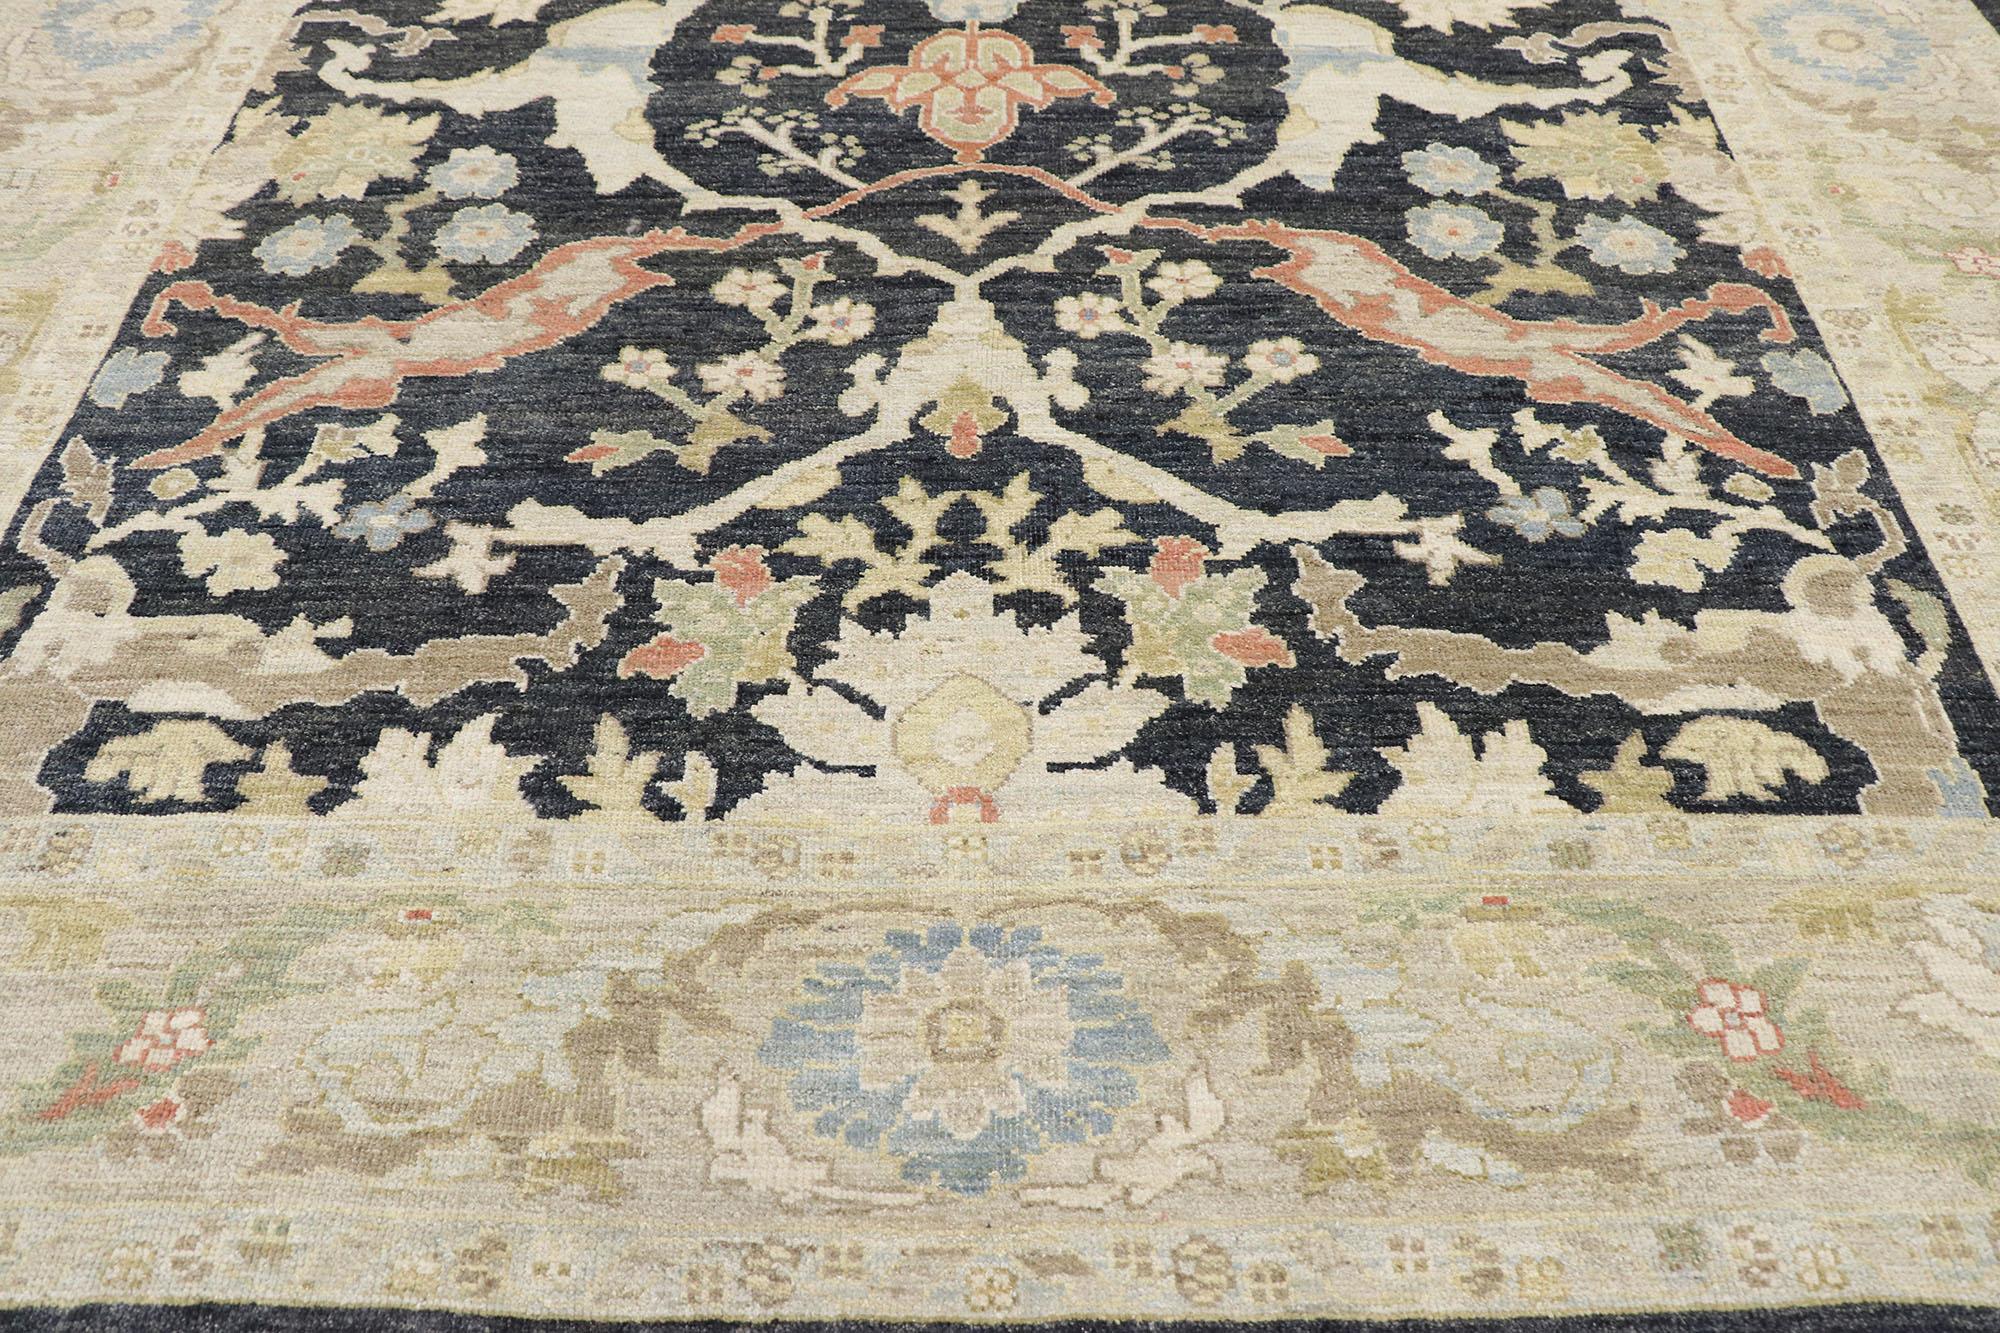 parisian style rug